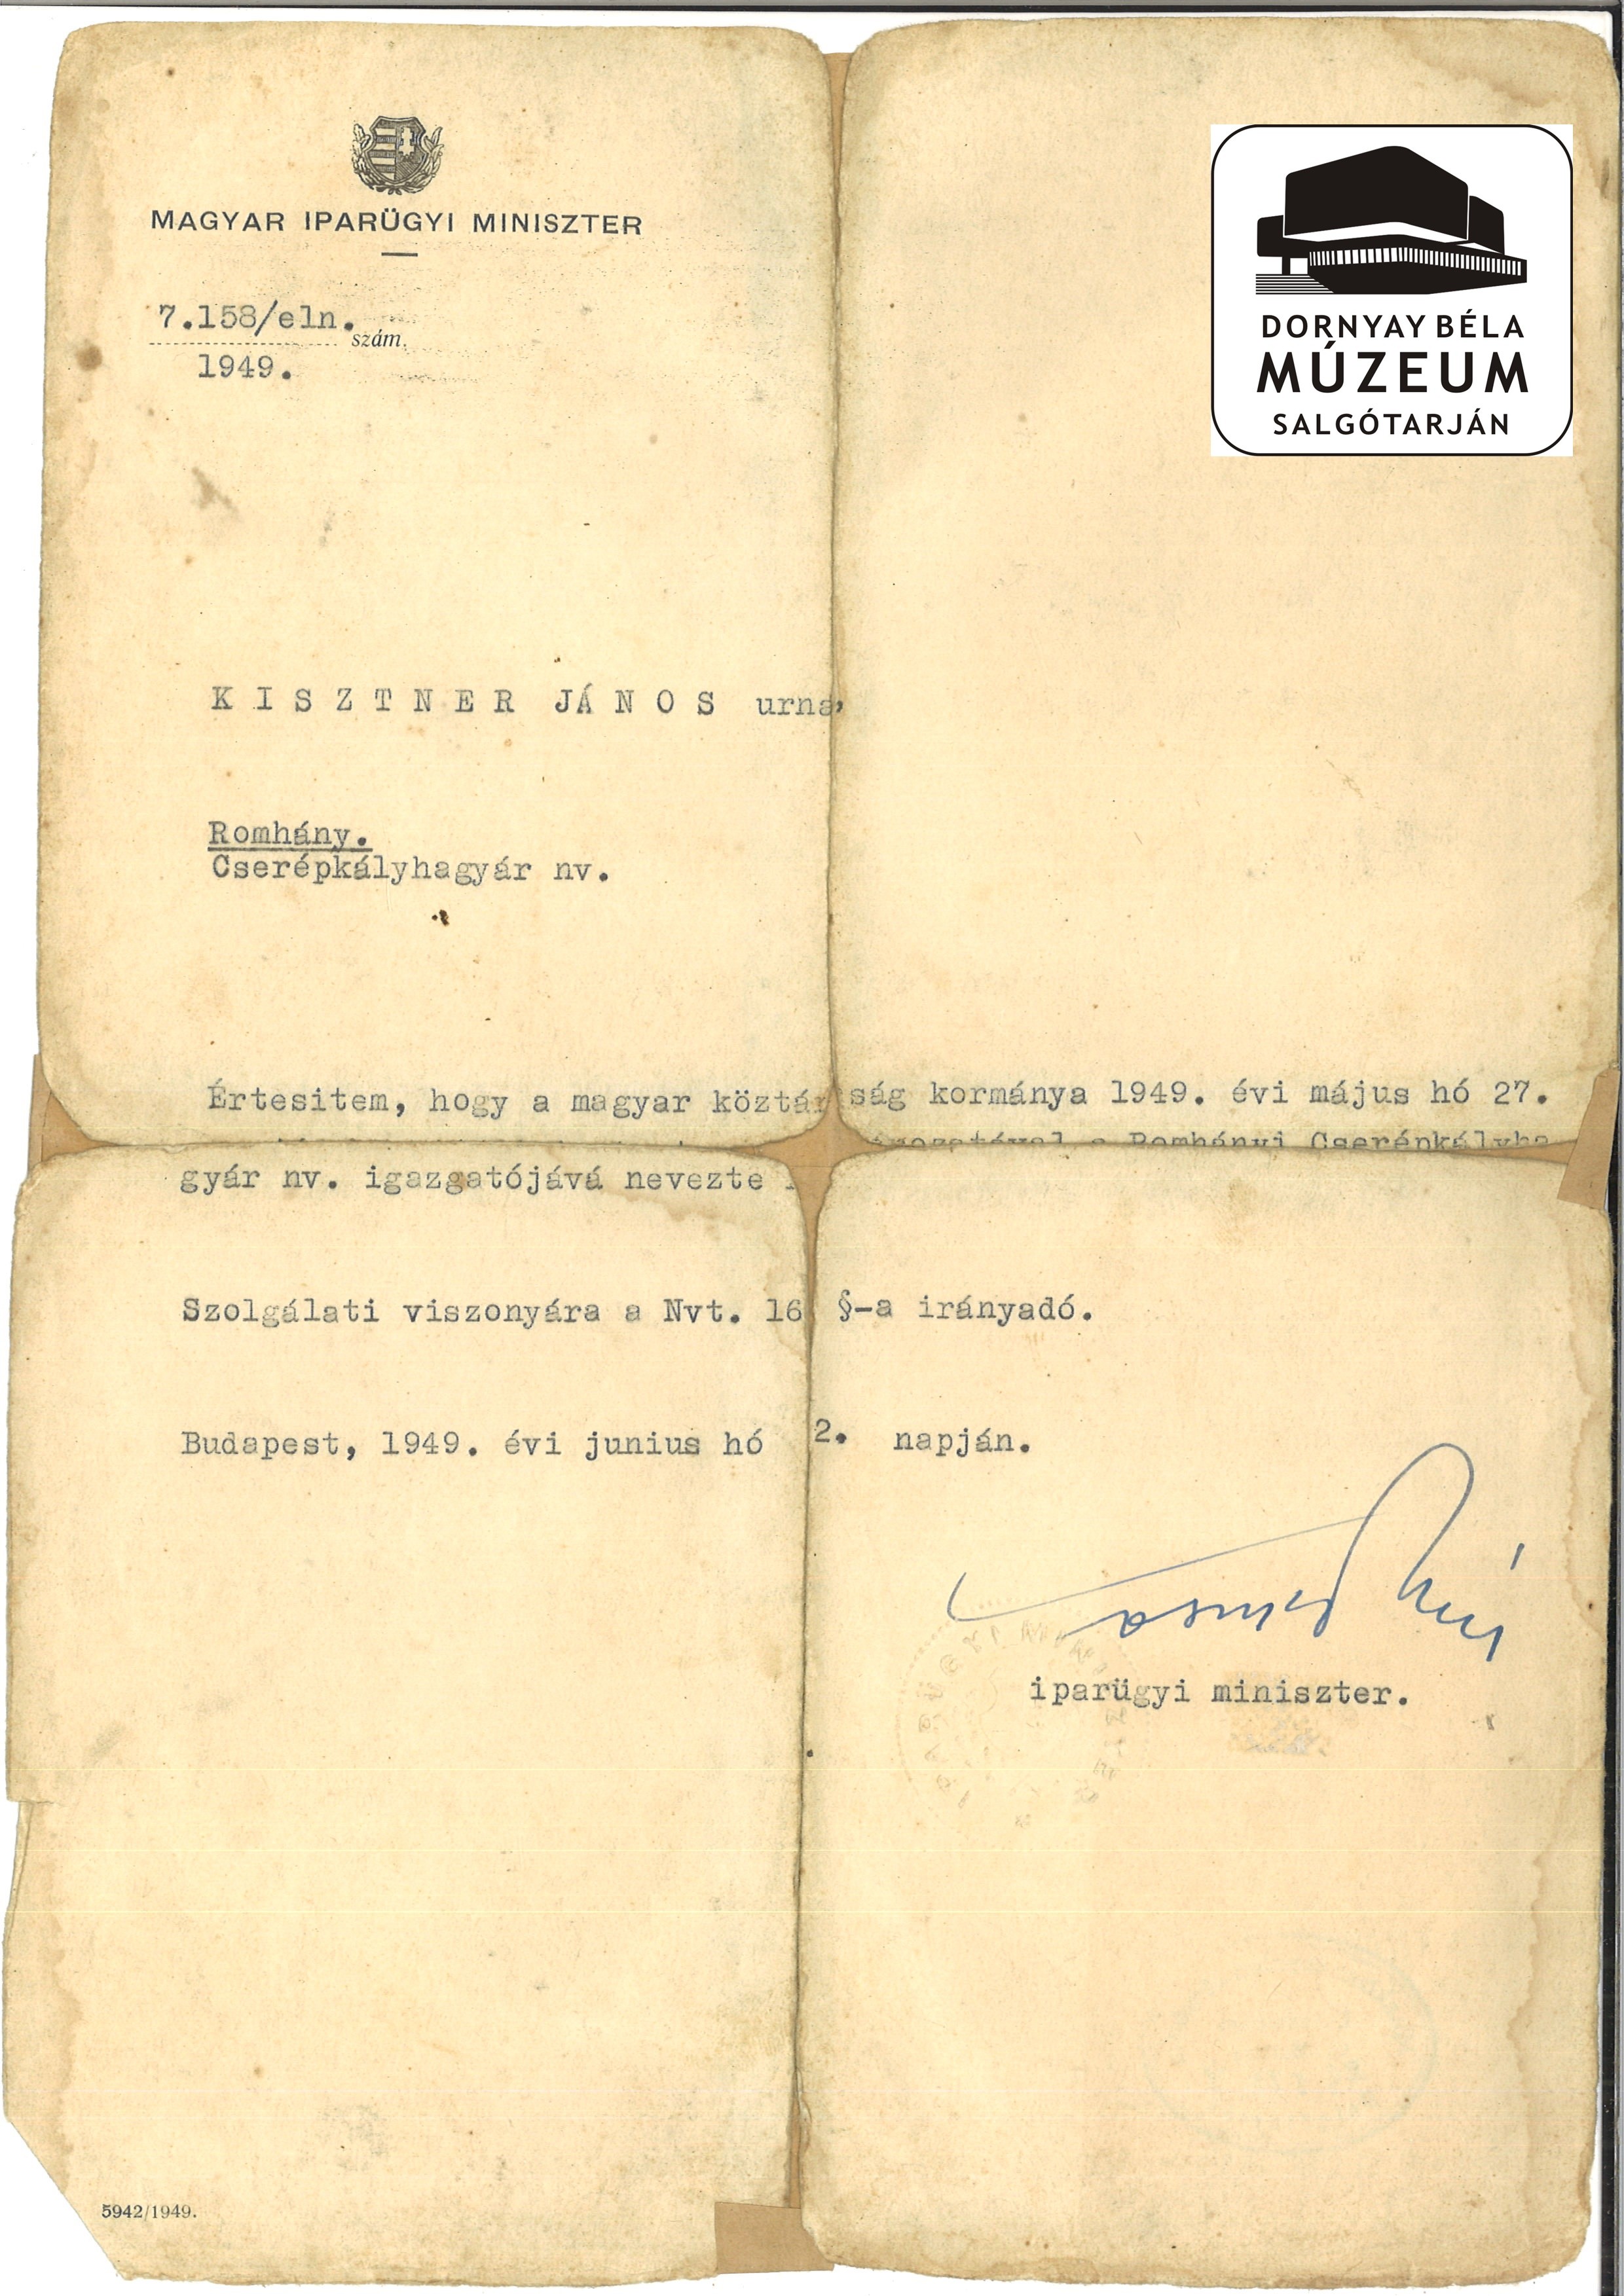 Kisztner János Bp-i vállalatvezetői kinevezése (Dornyay Béla Múzeum, Salgótarján CC BY-NC-SA)